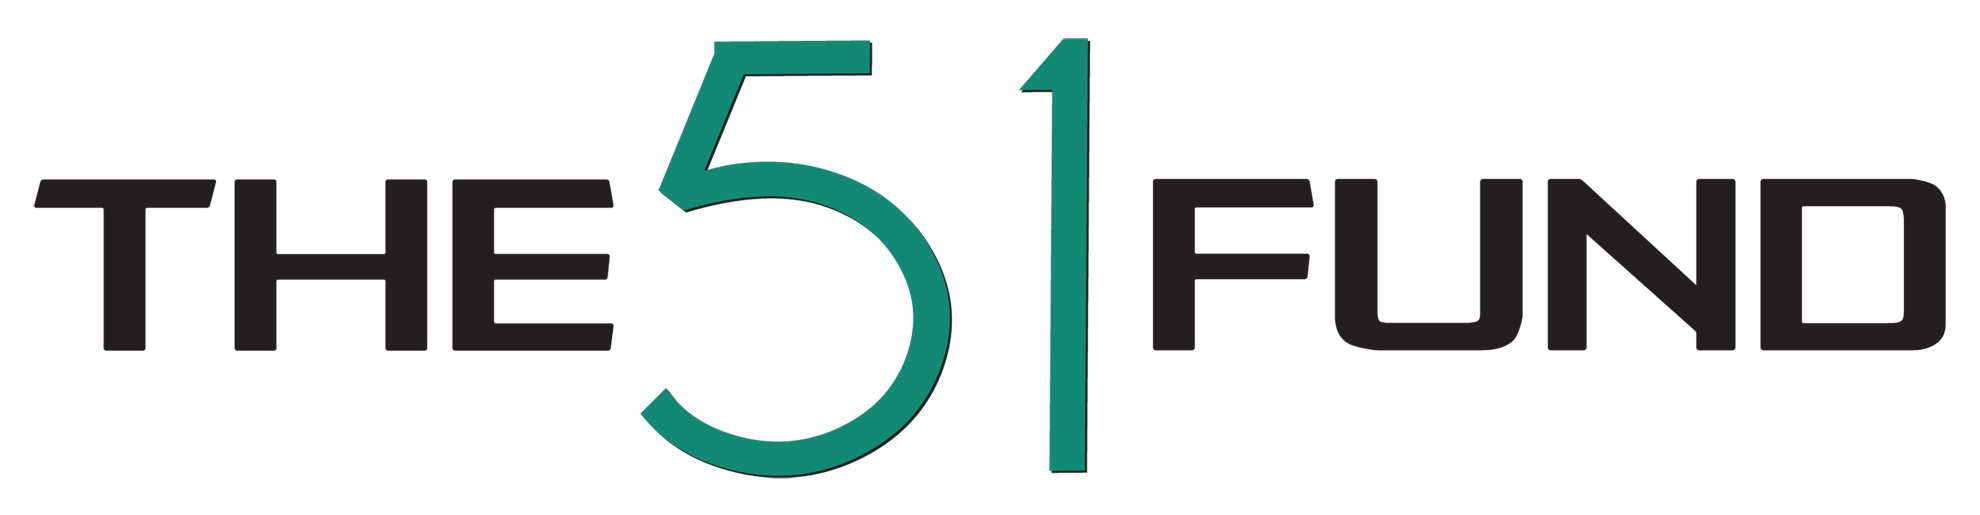 51fund-logo-xlrge.png